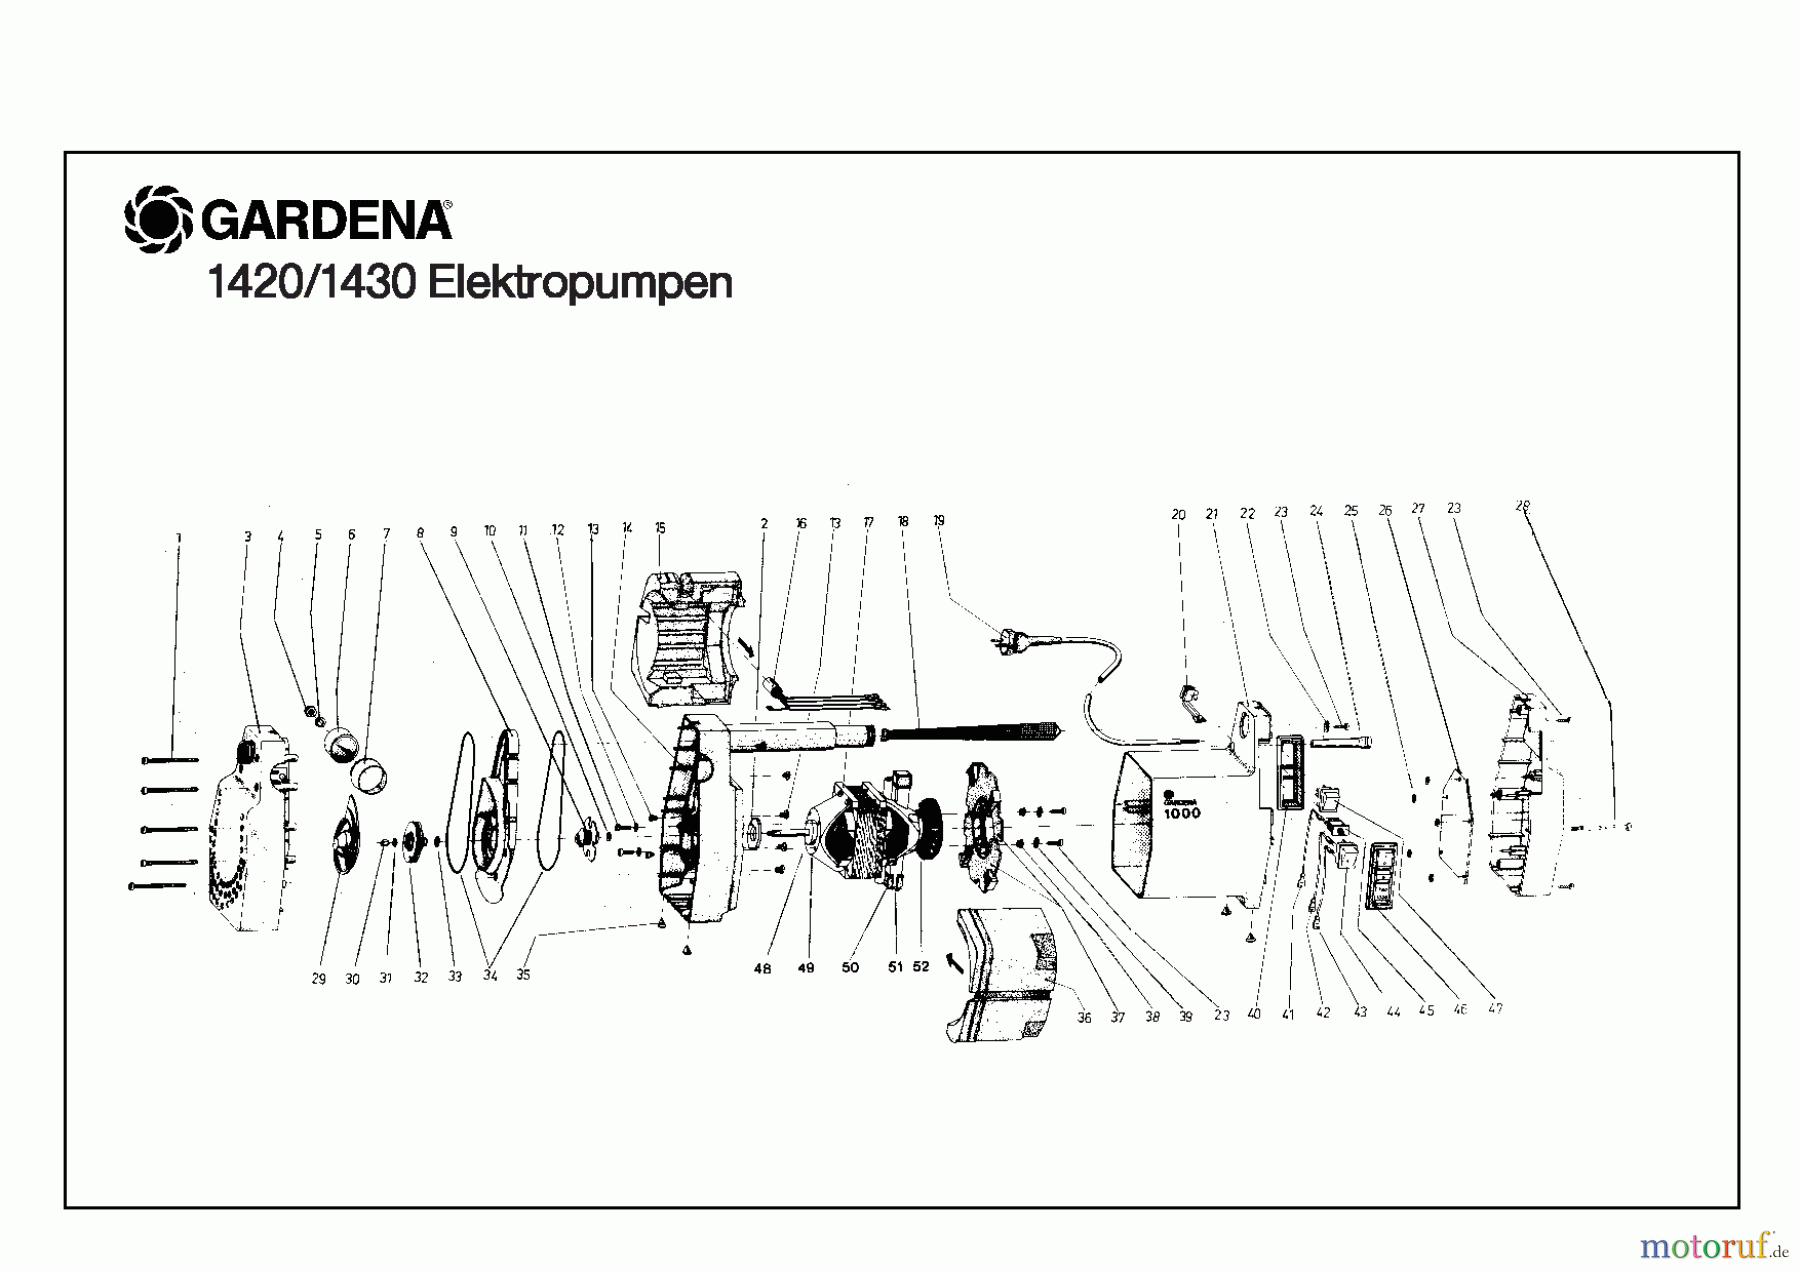  Gardena Wassertechnik Pumpen Elektropumpe 1000 E    Baujahr 1983 - 1987